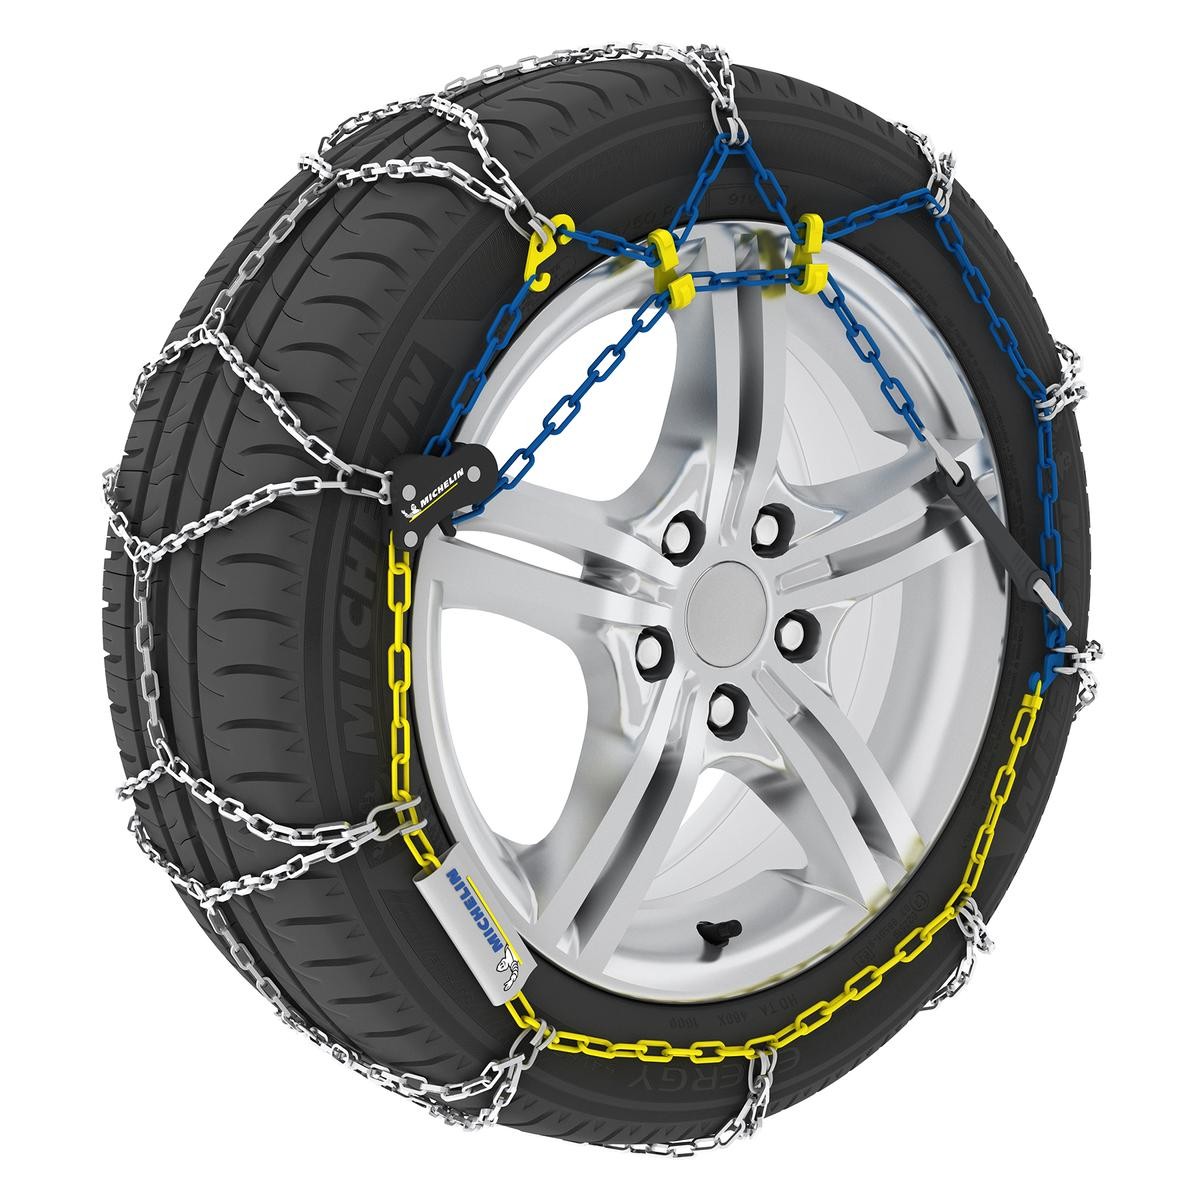 Chaînes pour pneus 185-65-R15 Michelin Extreme Grip 70 008427